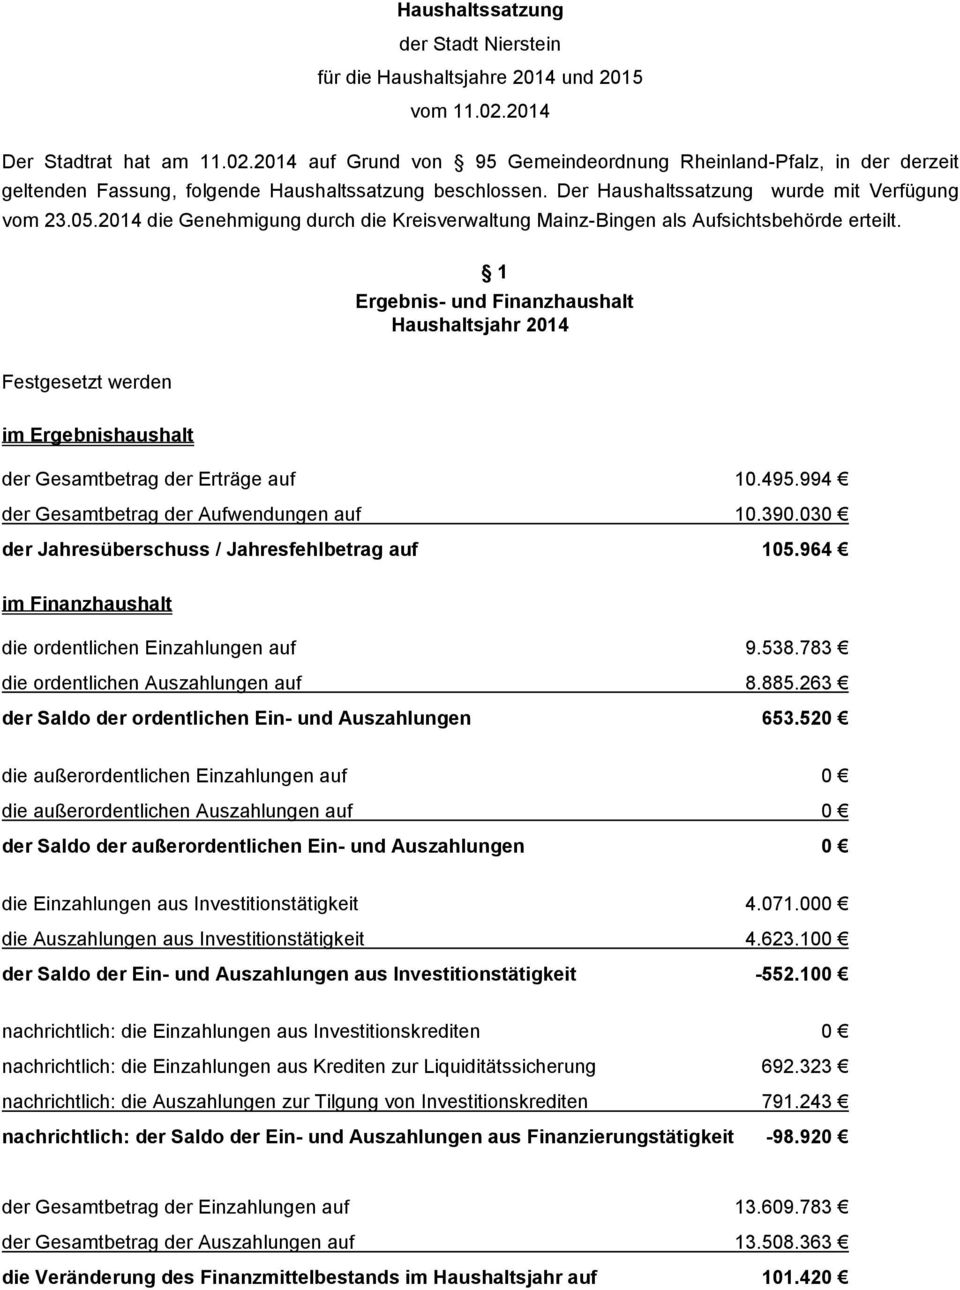 Der Haushaltssatzung wurde mit Verfügung vom 23.05.2014 die Genehmigung durch die Kreisverwaltung Mainz-Bingen als Aufsichtsbehörde erteilt.